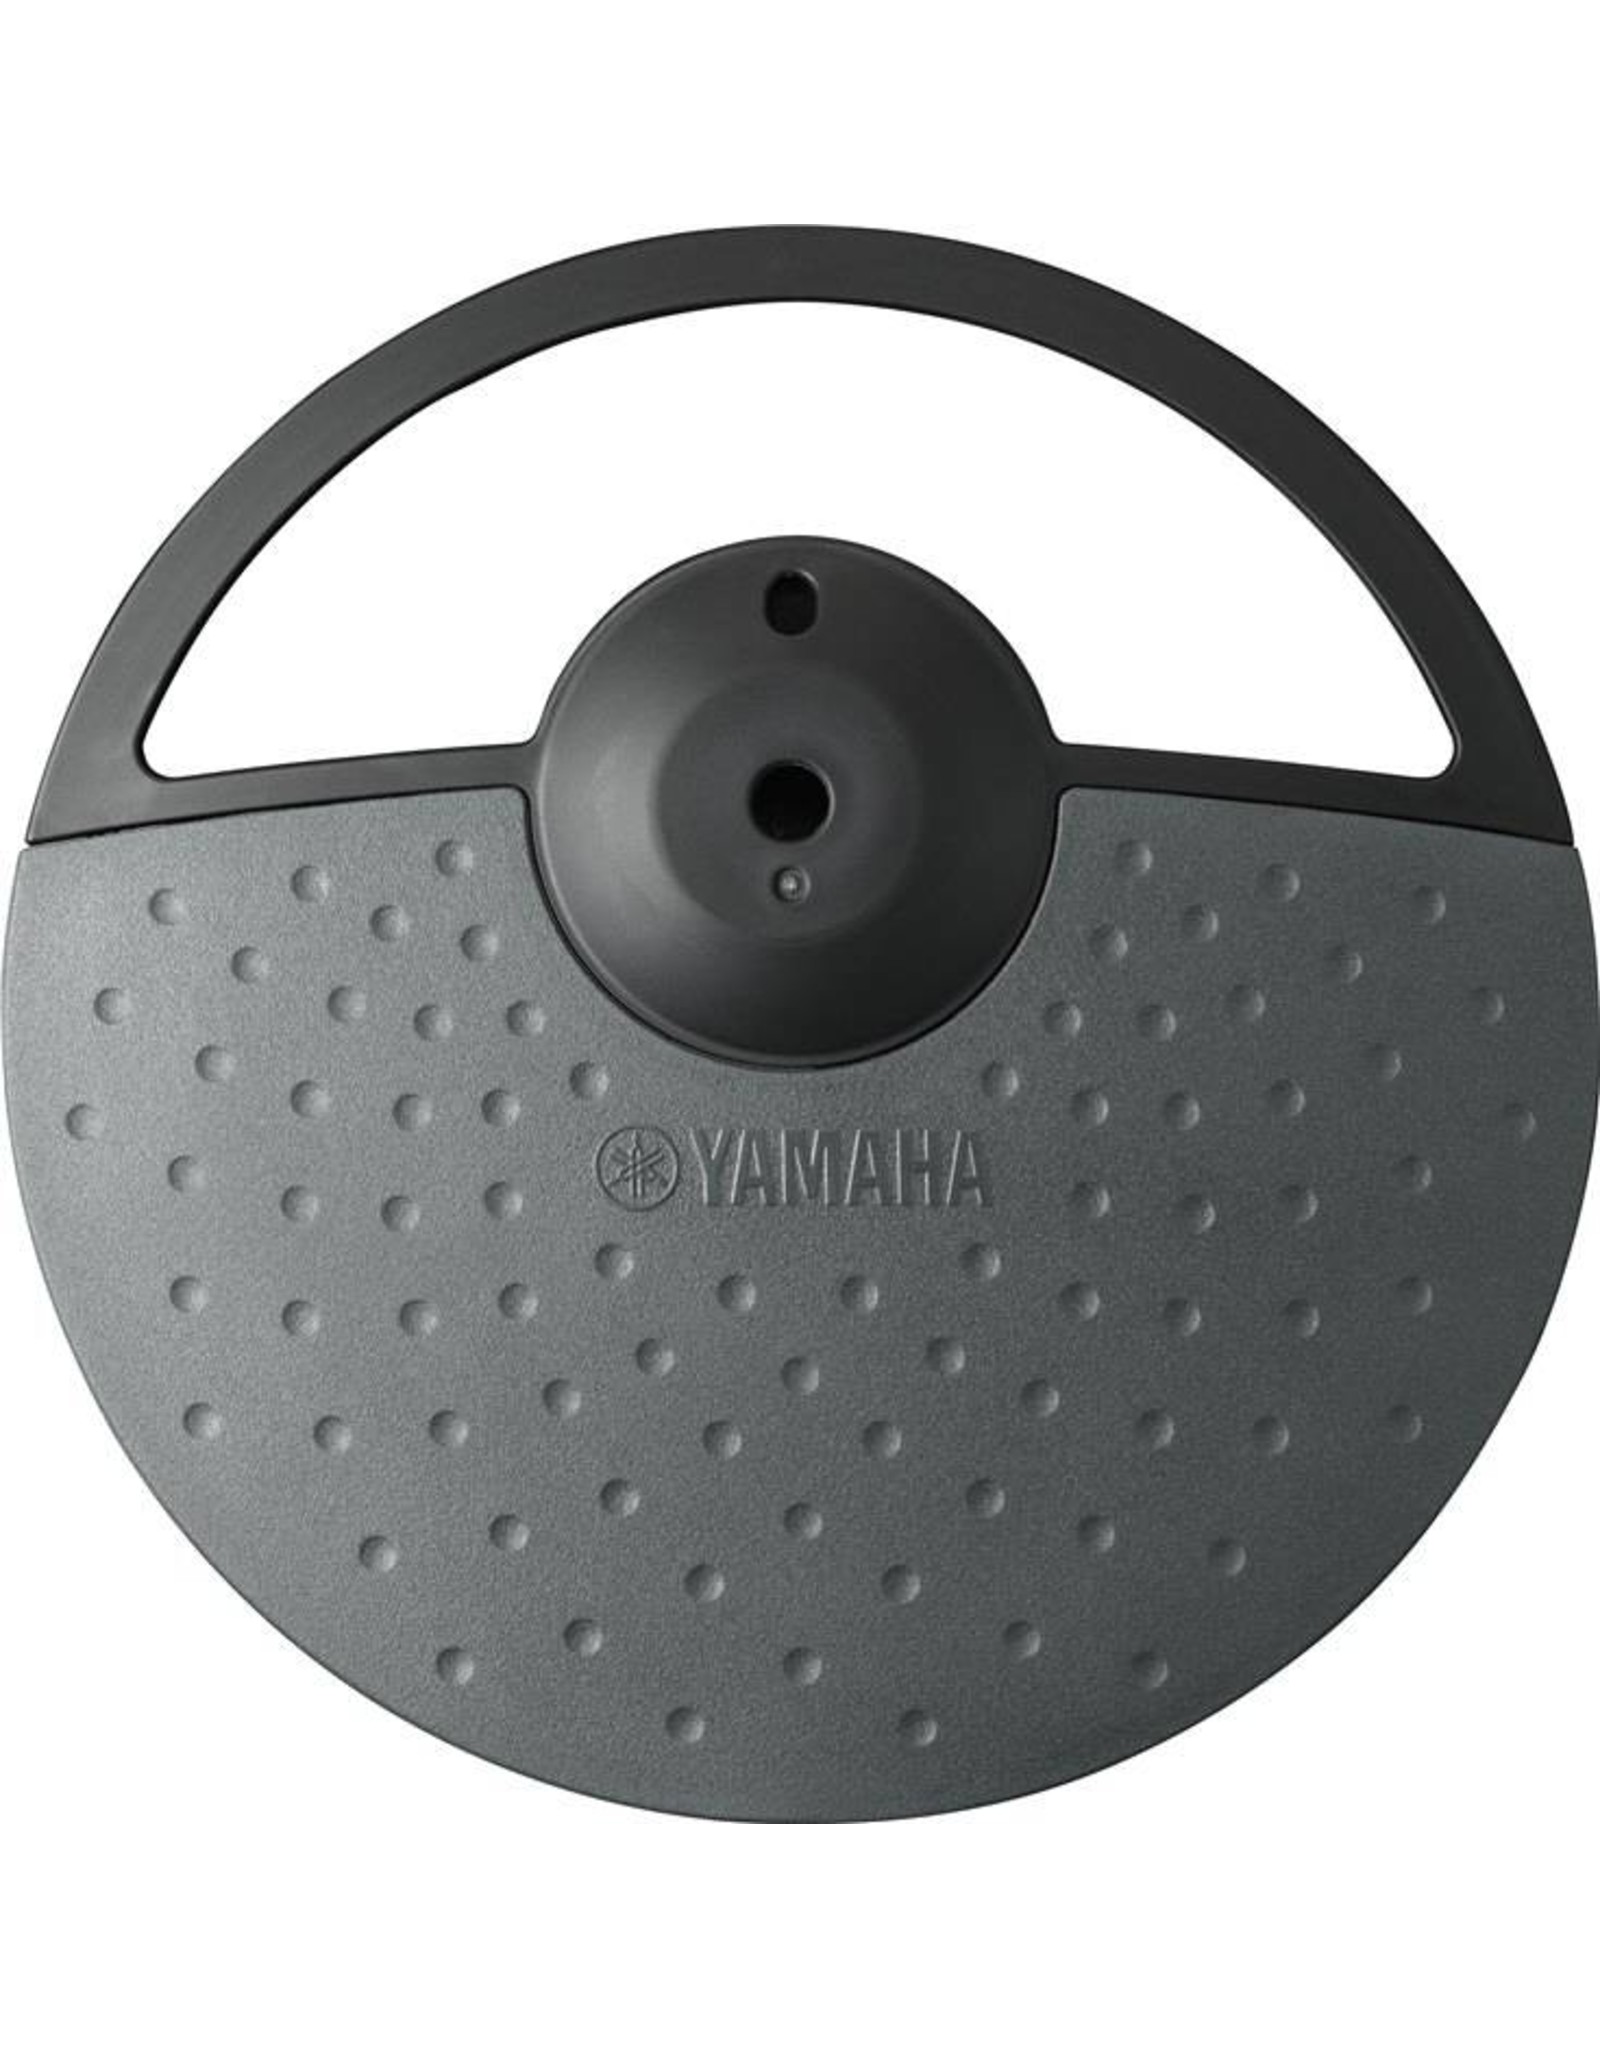 Yamaha PCY-90AT-Set cymbalpad set, für ua DTX400 Serie